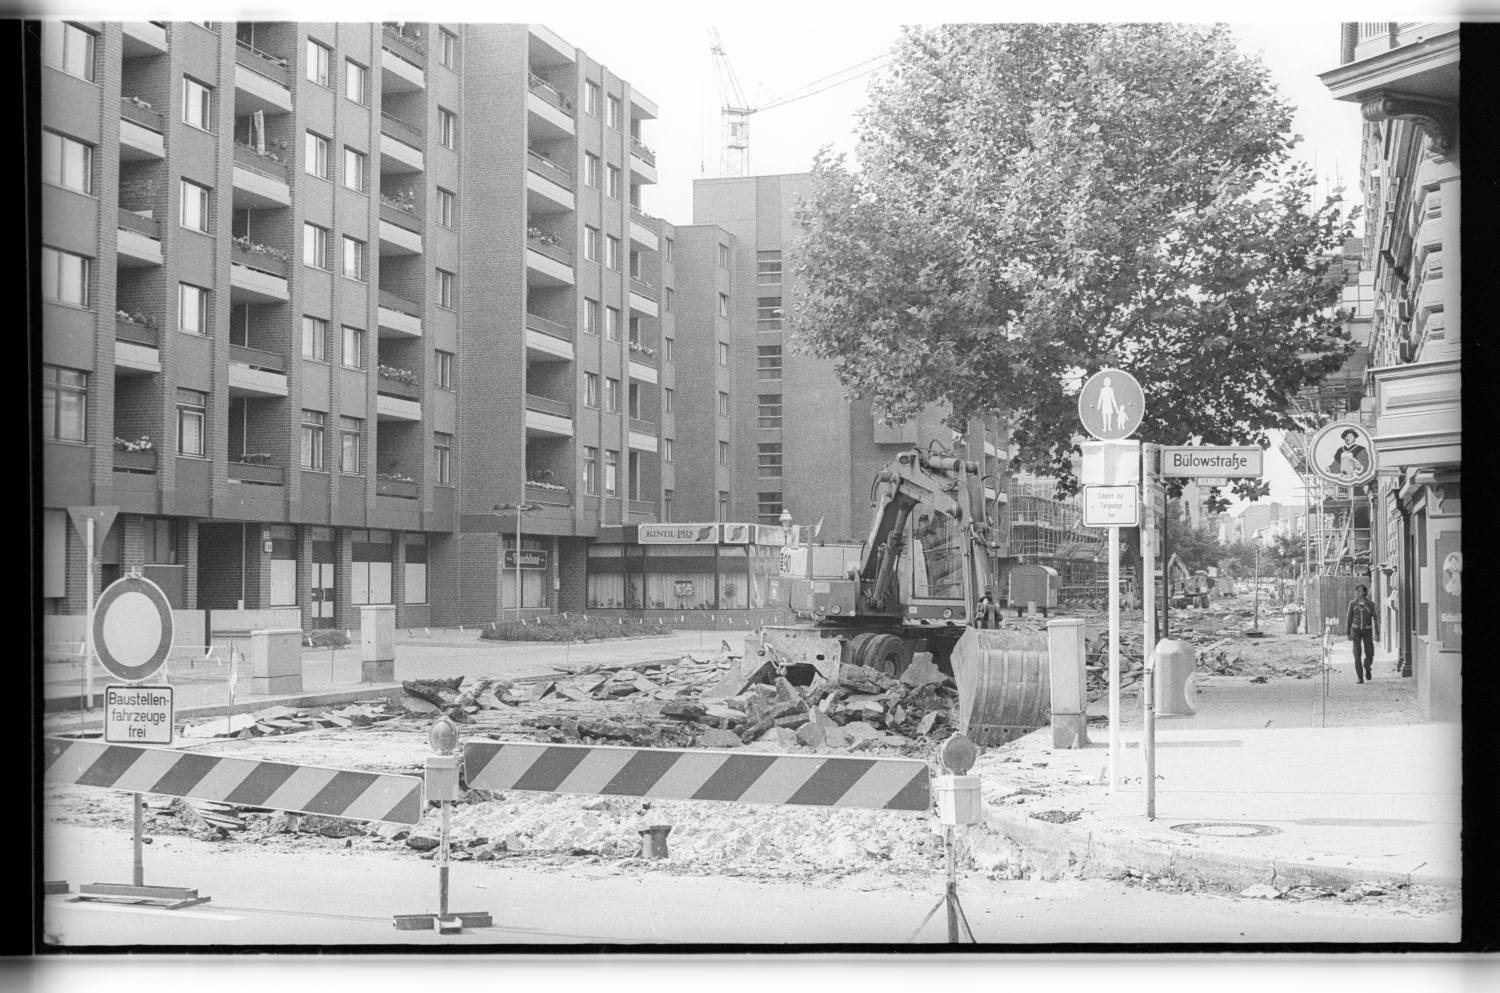 Kleinbildnegative: Straßenbauarbeiten, Steinmetzstraße, 1978 (Museen Tempelhof-Schöneberg/Jürgen Henschel RR-F)